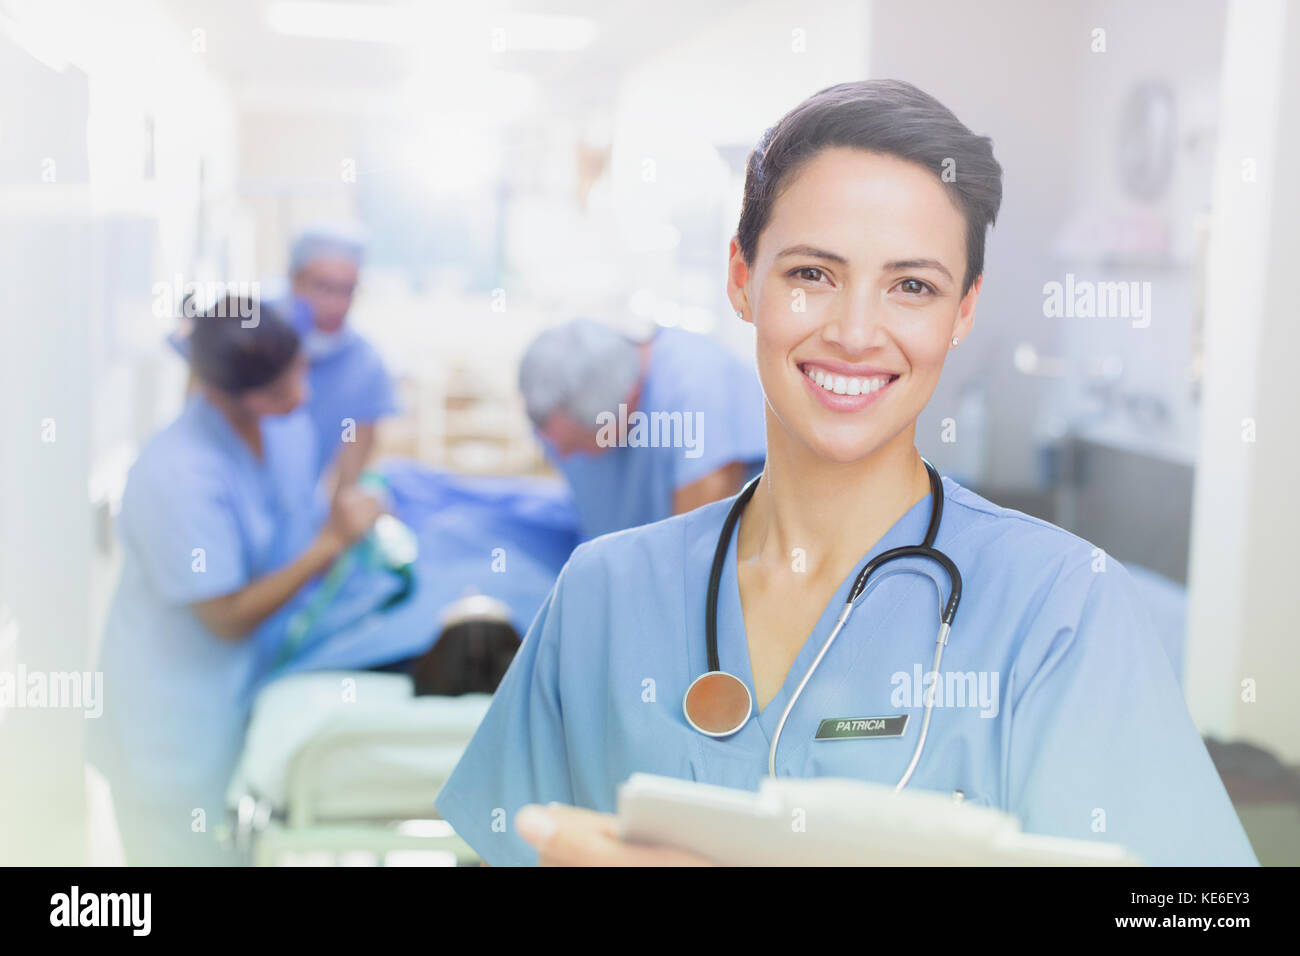 Ritratto sorridente, sicuro chirurgo femminile con appunti nel corridoio ospedaliero Foto Stock